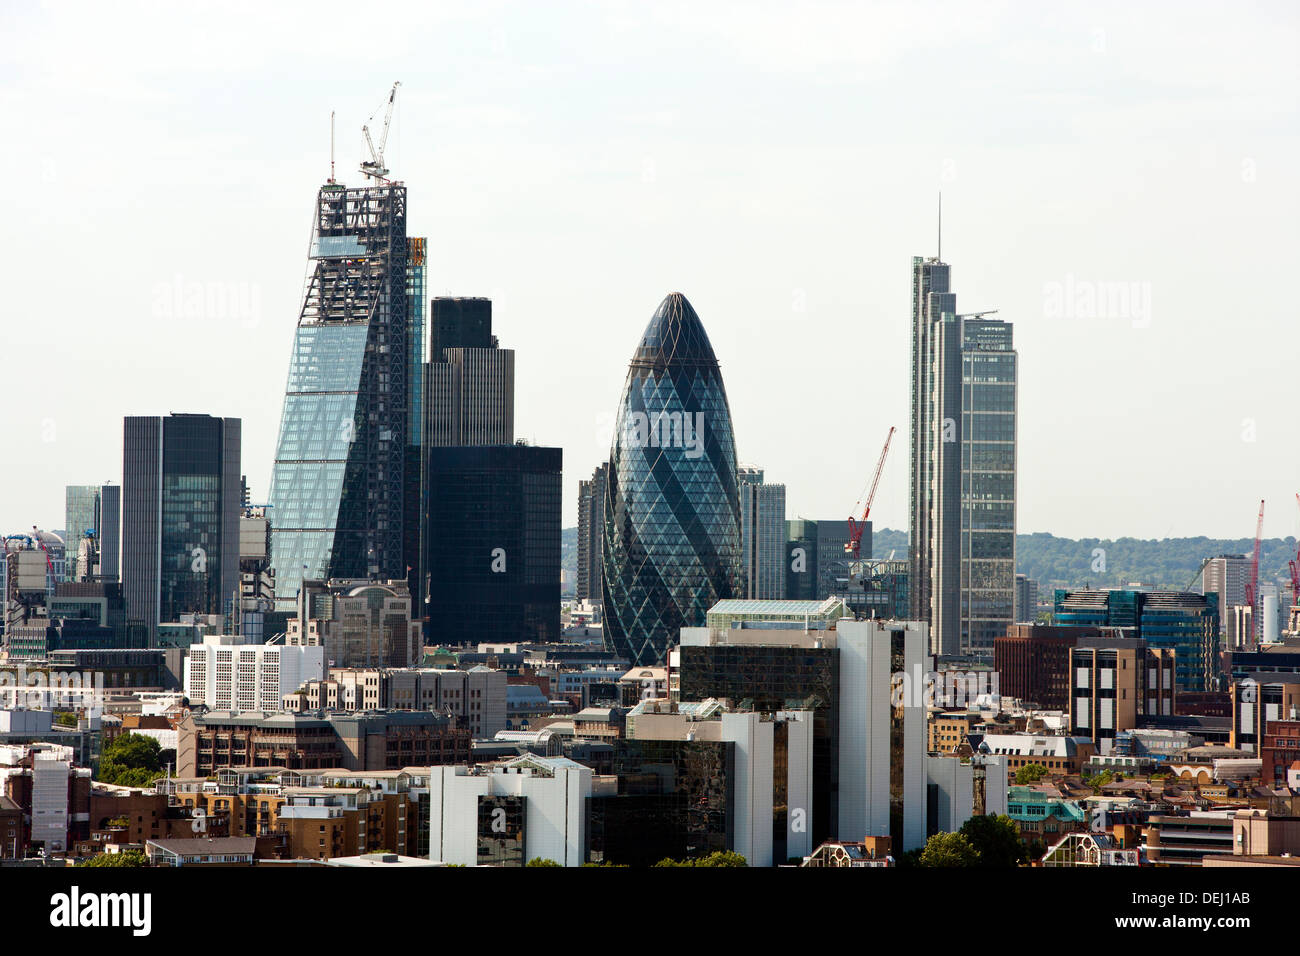 Erhöht die Gurke, die umliegenden Gebäude, London anzeigen Stockfoto